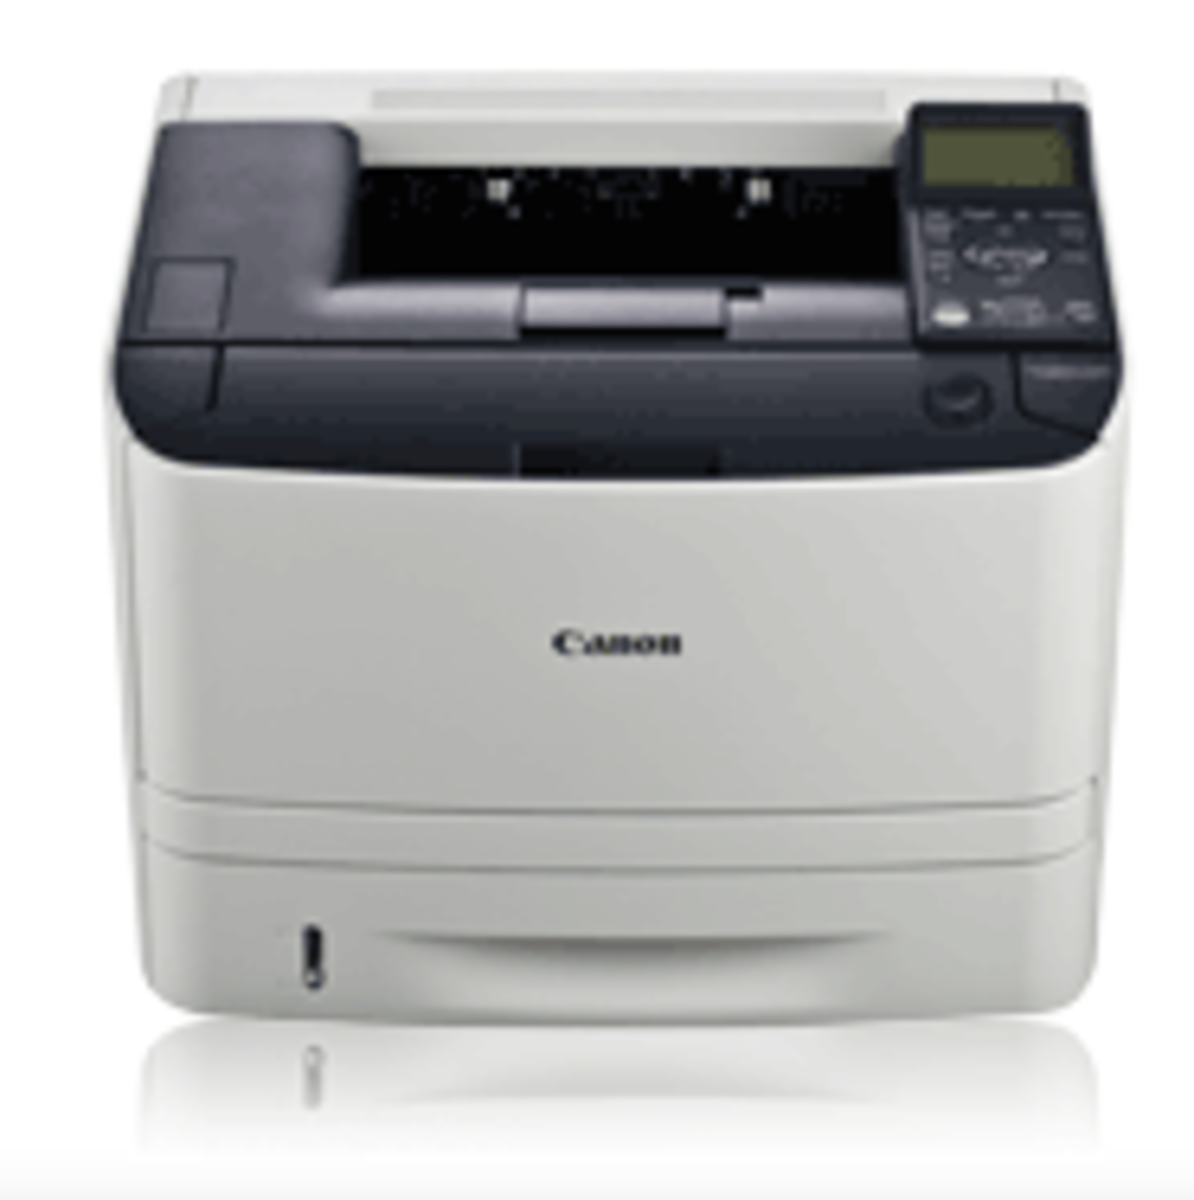 canon imageclass mf4270 printer driver